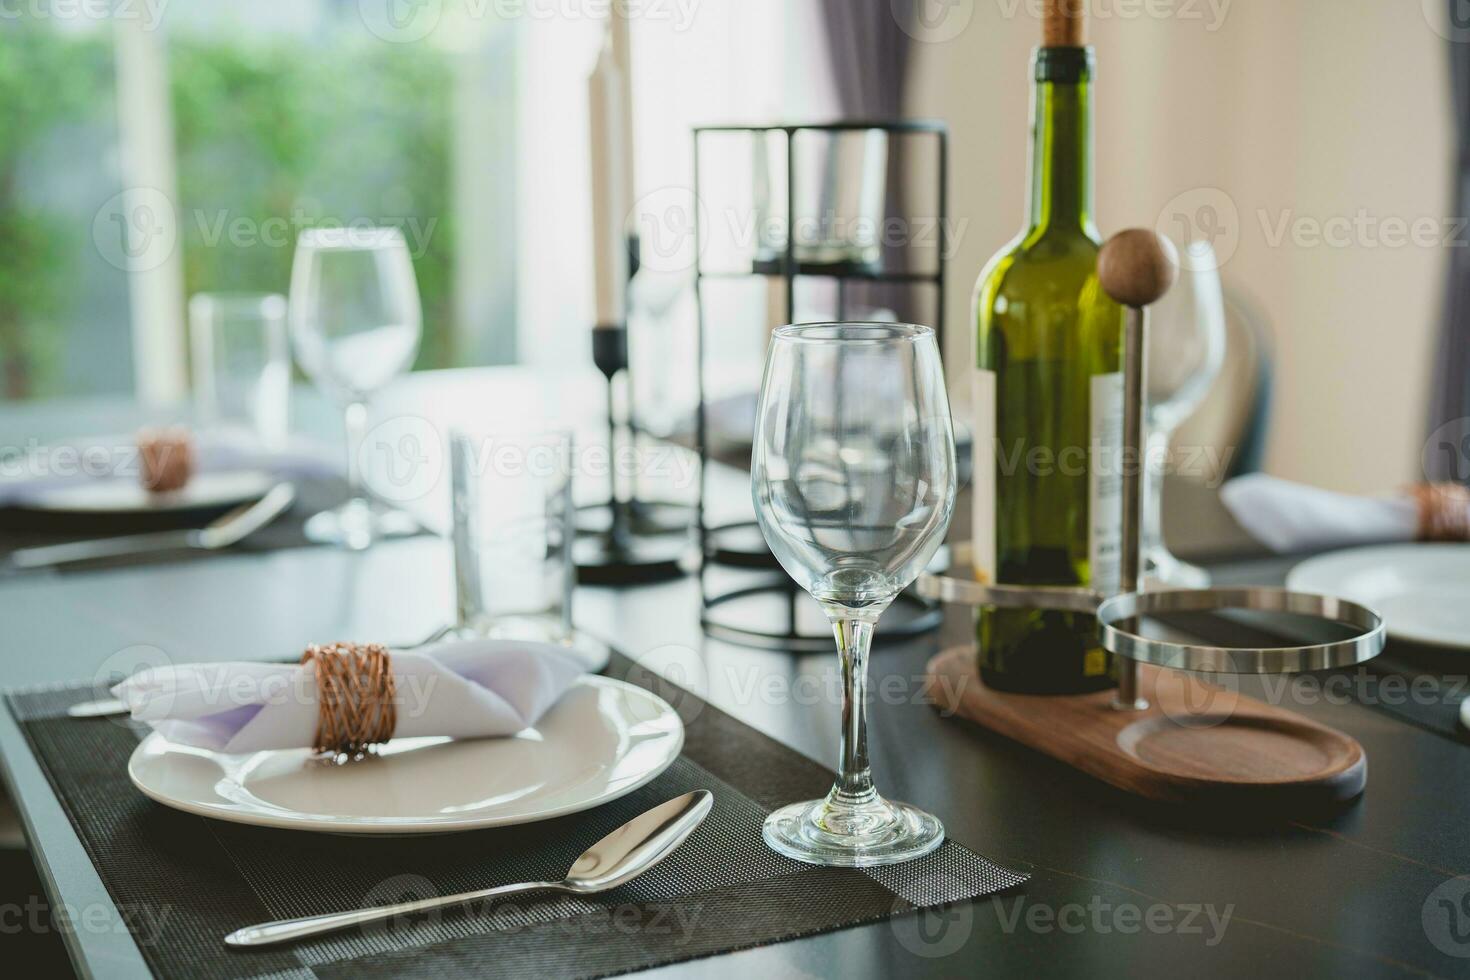 de cerca de vino lentes en el comida mesa. incluso platos y cuchillería preparado para clientes quien será utilizar el Servicio en moderno restaurantes o hoteles foto